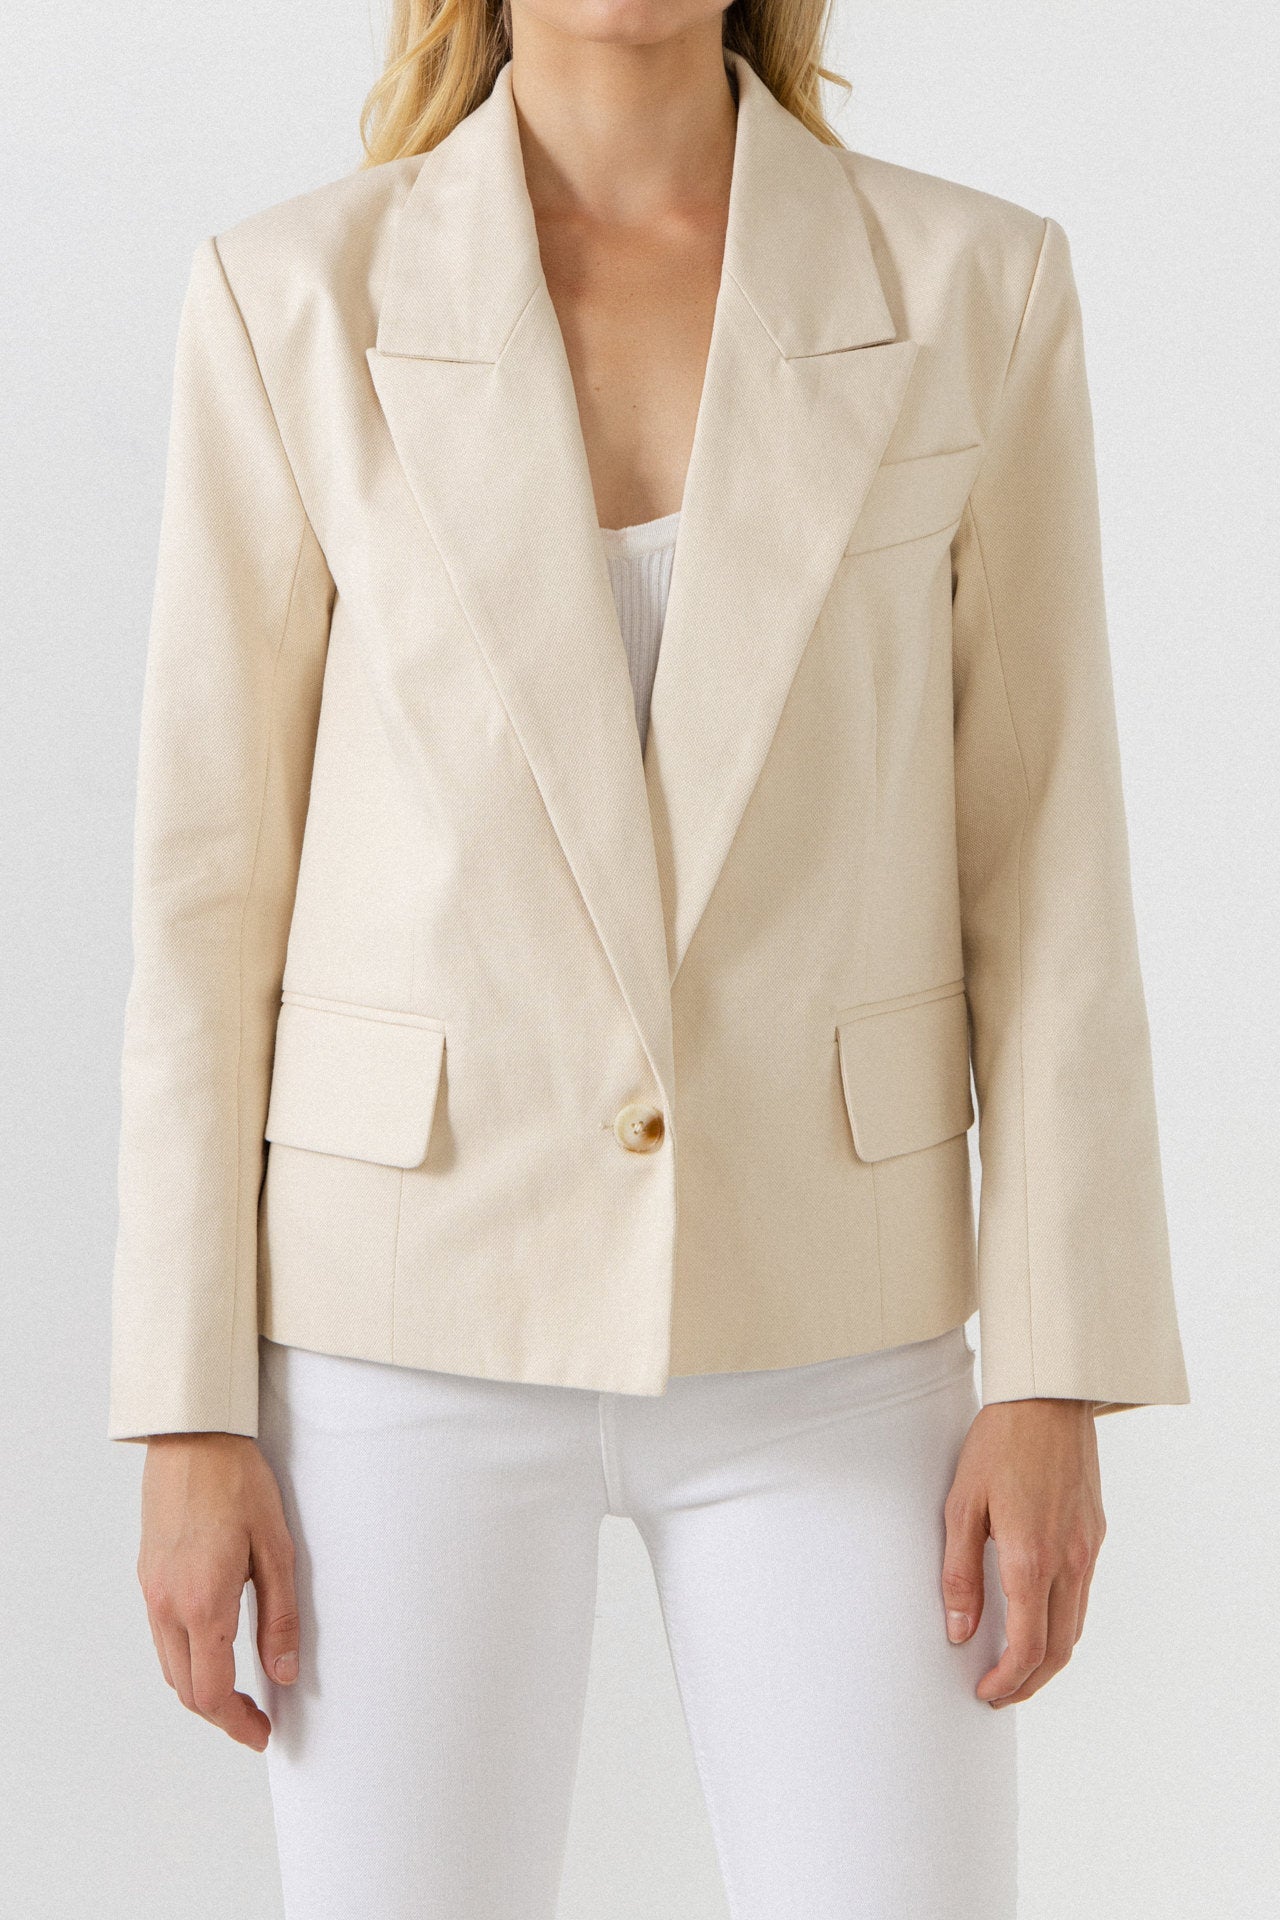 Engravable Coat and Jacket Buttons: Vermeil Plain Blazer Button